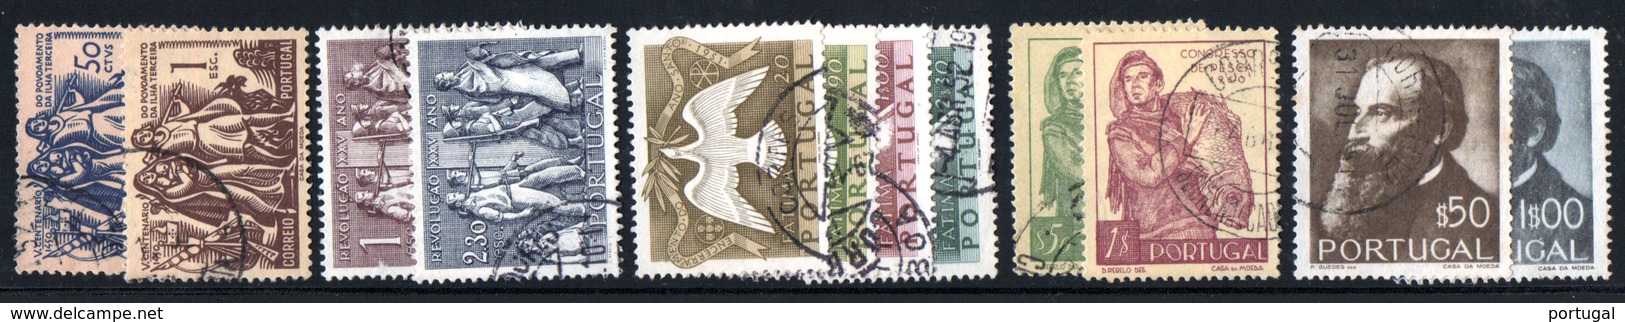 N° 740 / 751 - 1951 - Volledig Jaar